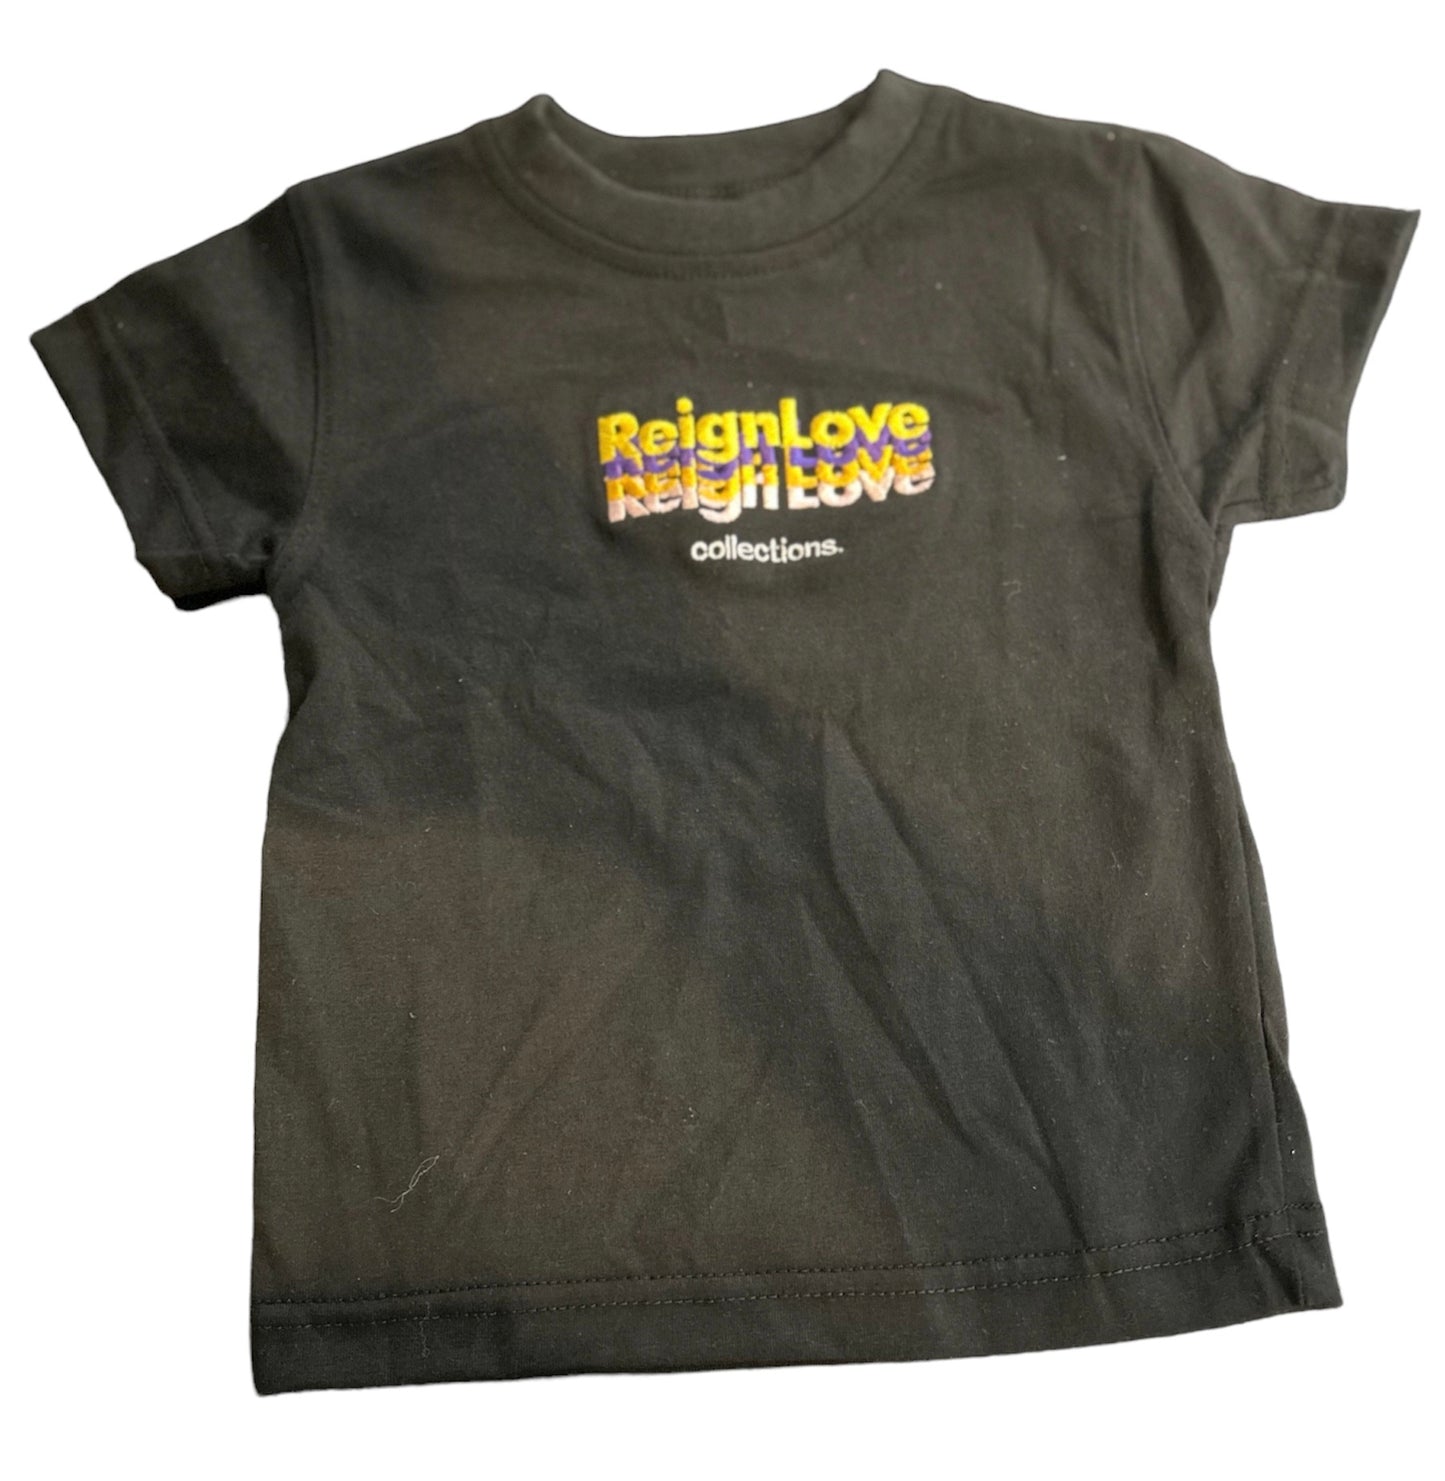 Reign love logo shirt